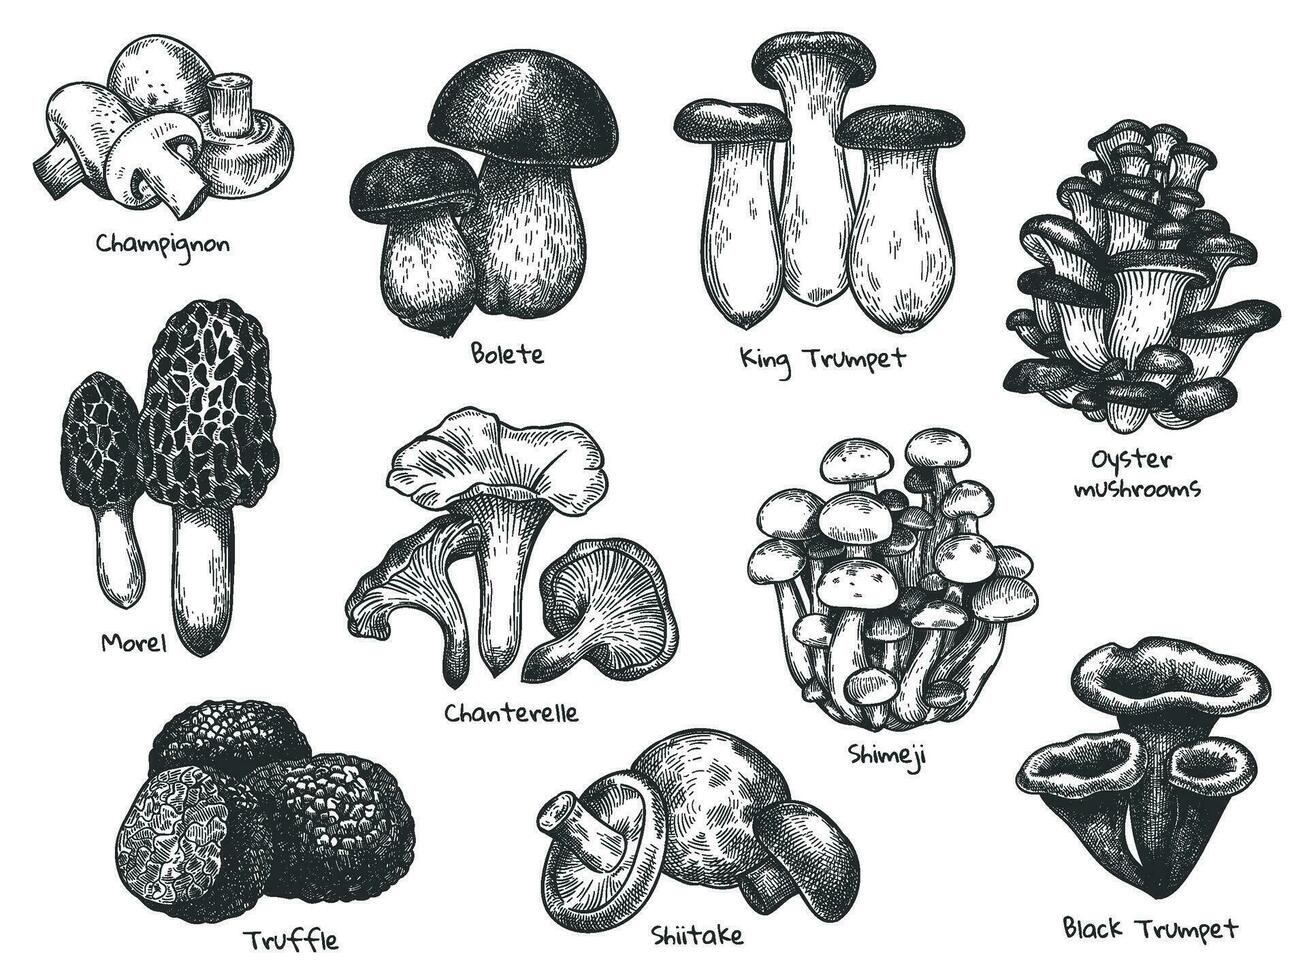 schizzo funghi. mano disegnato vario commestibile fungo spugnola, tartufo, champignon, nero e re tromba, bolete fungo Vintage ▾ vettore impostare.